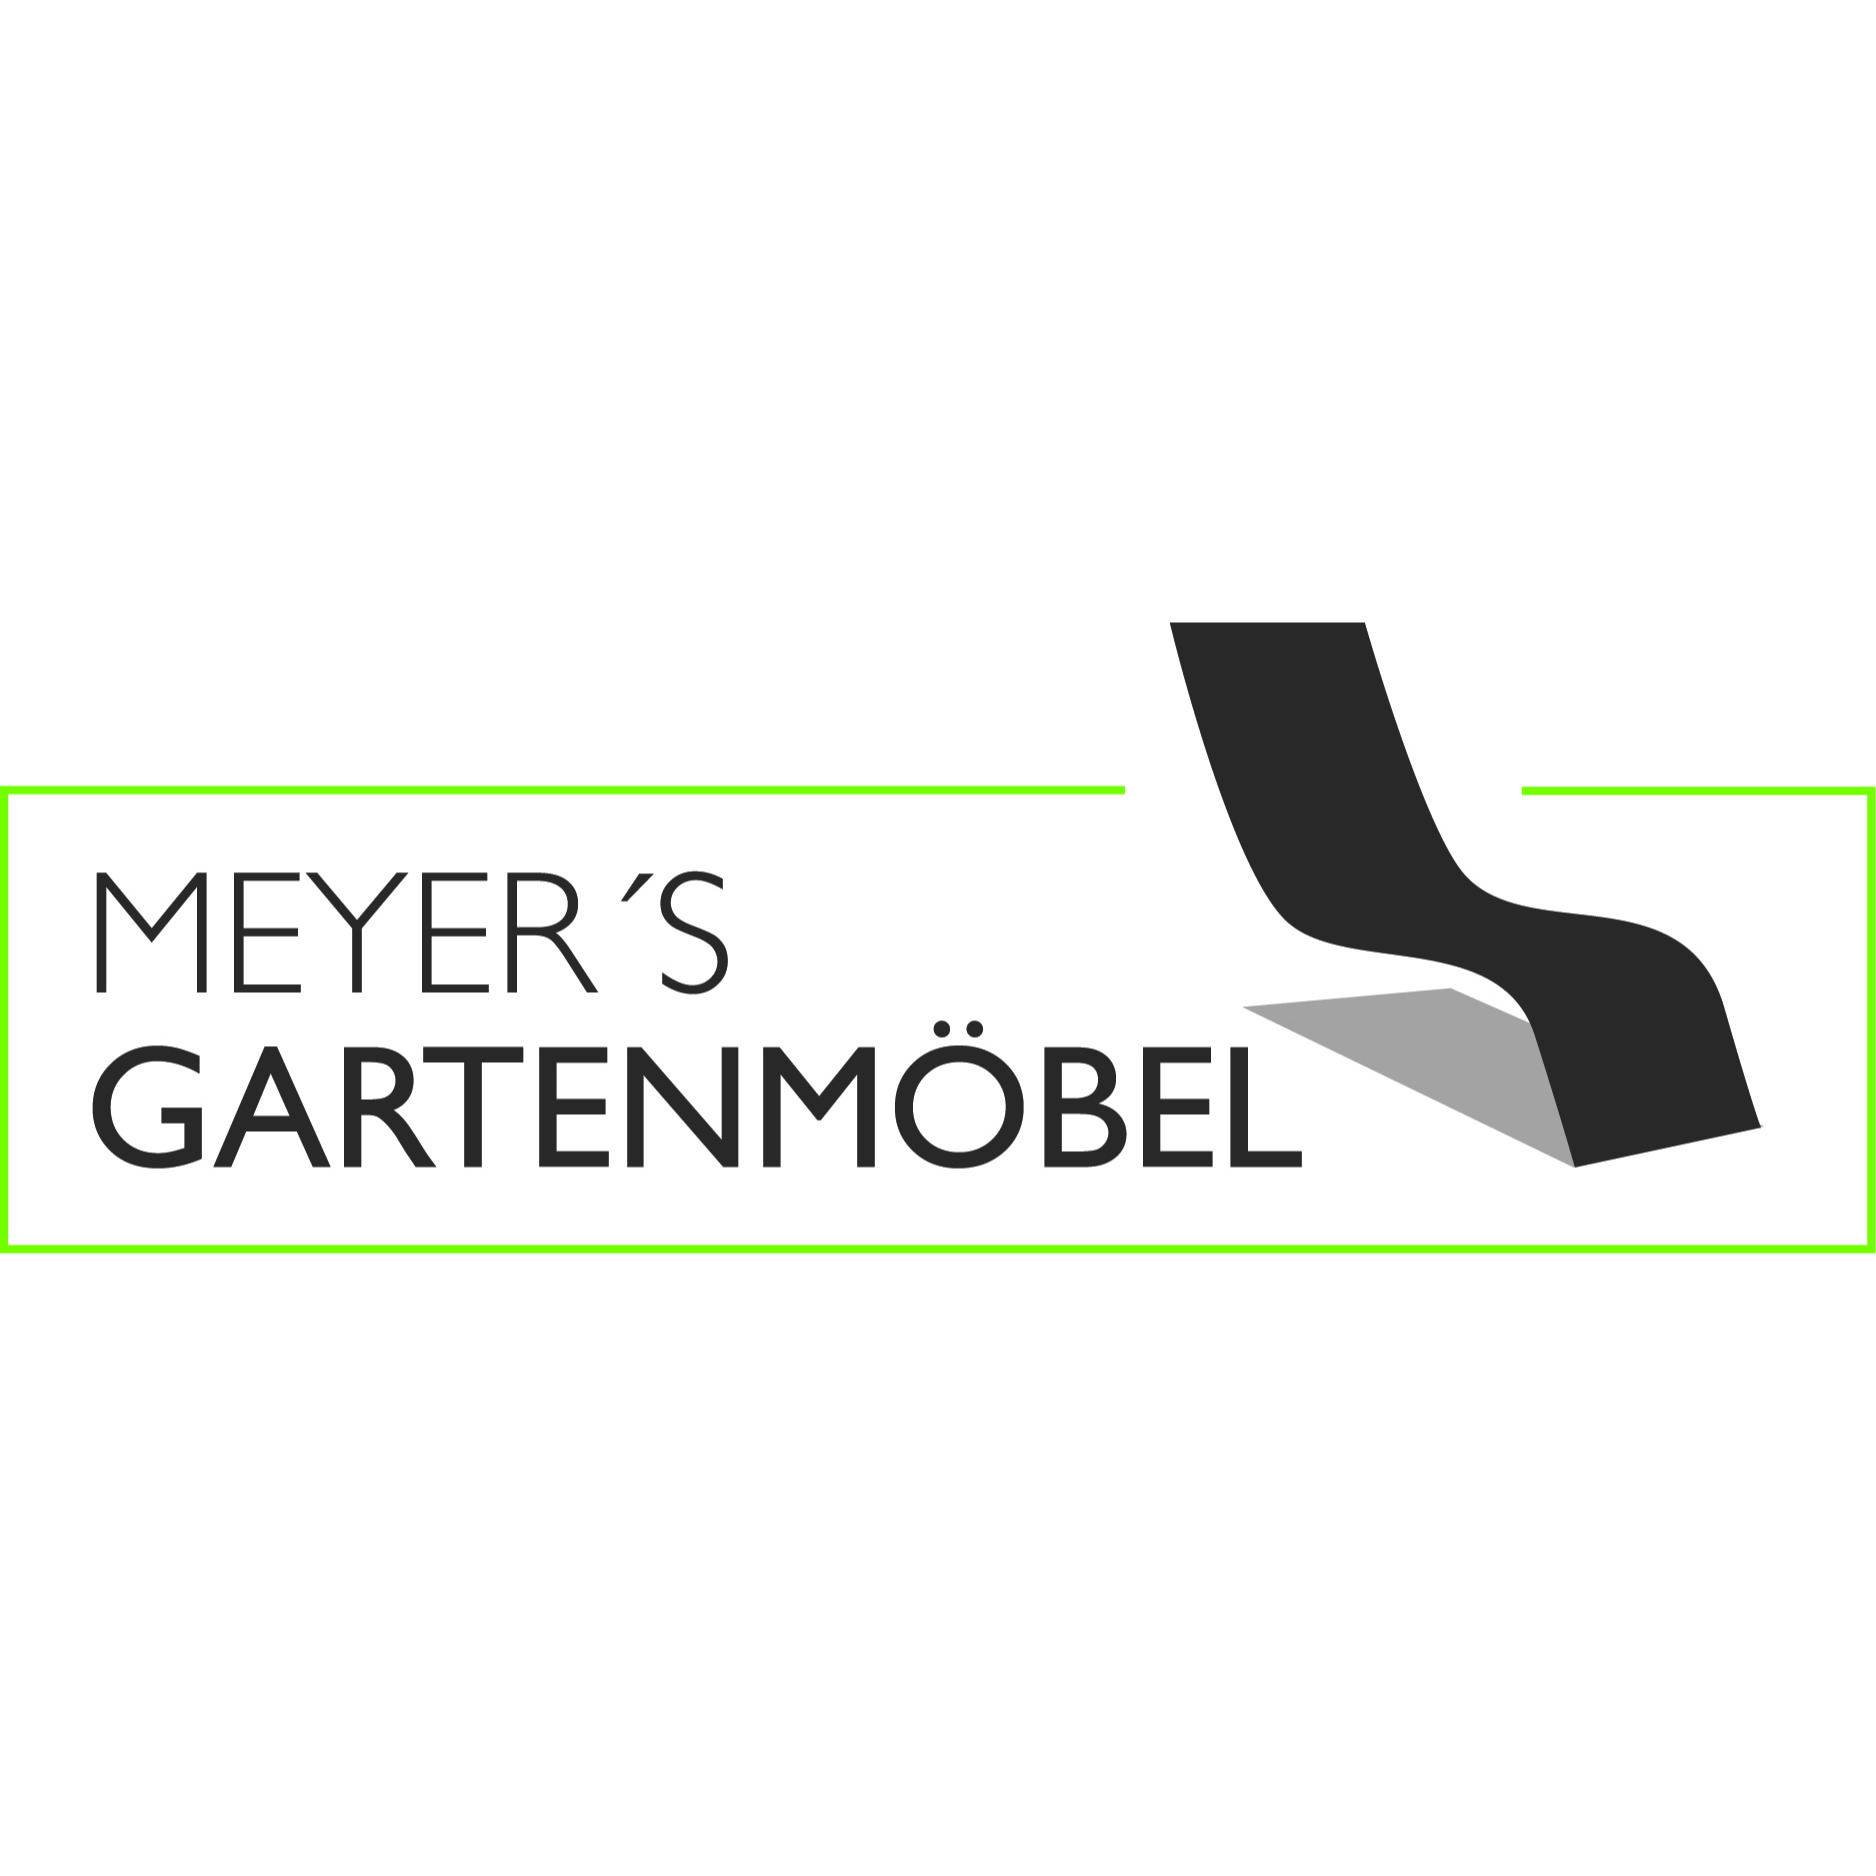 Gartenmöbel-Center Meyer GmbH & Co. KG in Münster